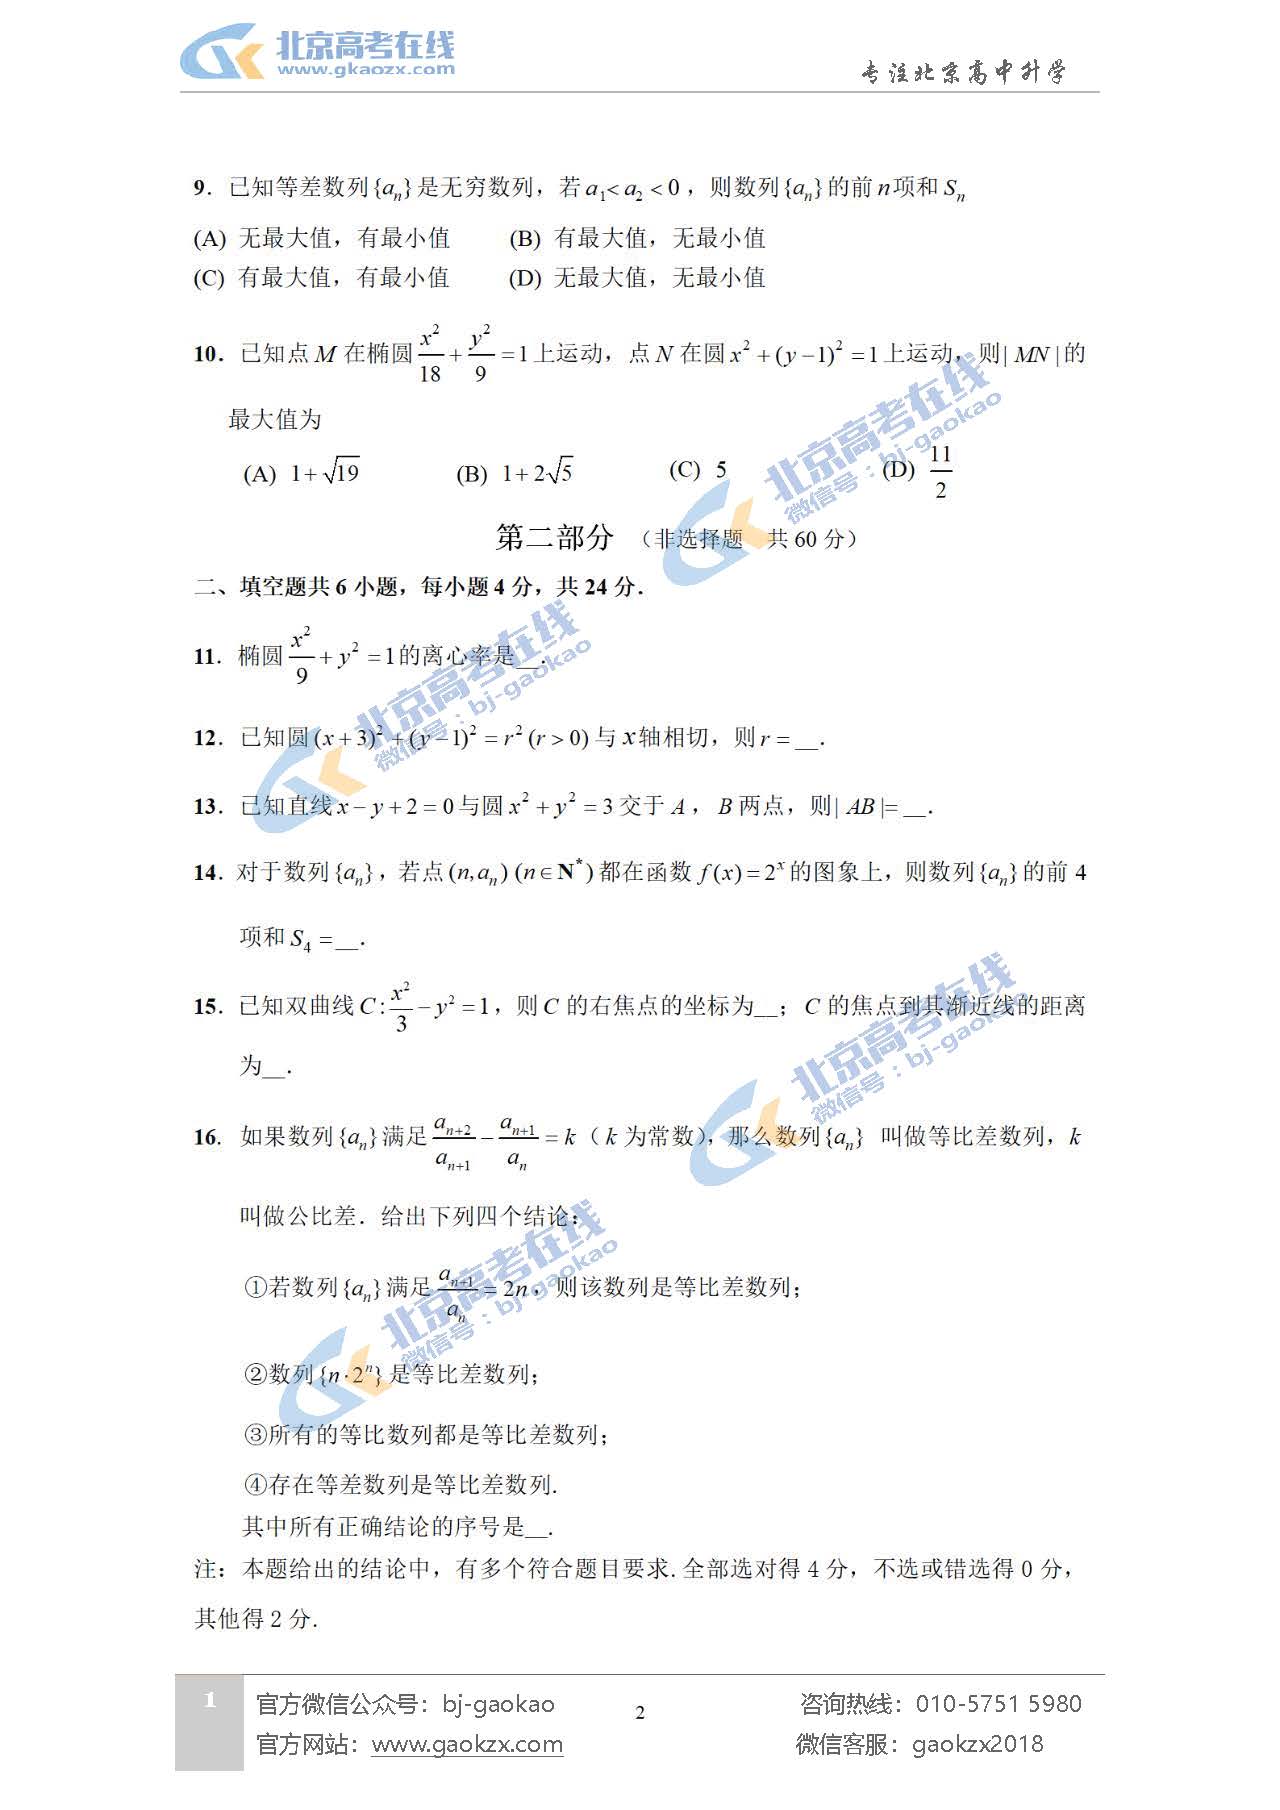 2021年北京丰台区高二期末考试数学试题及答案